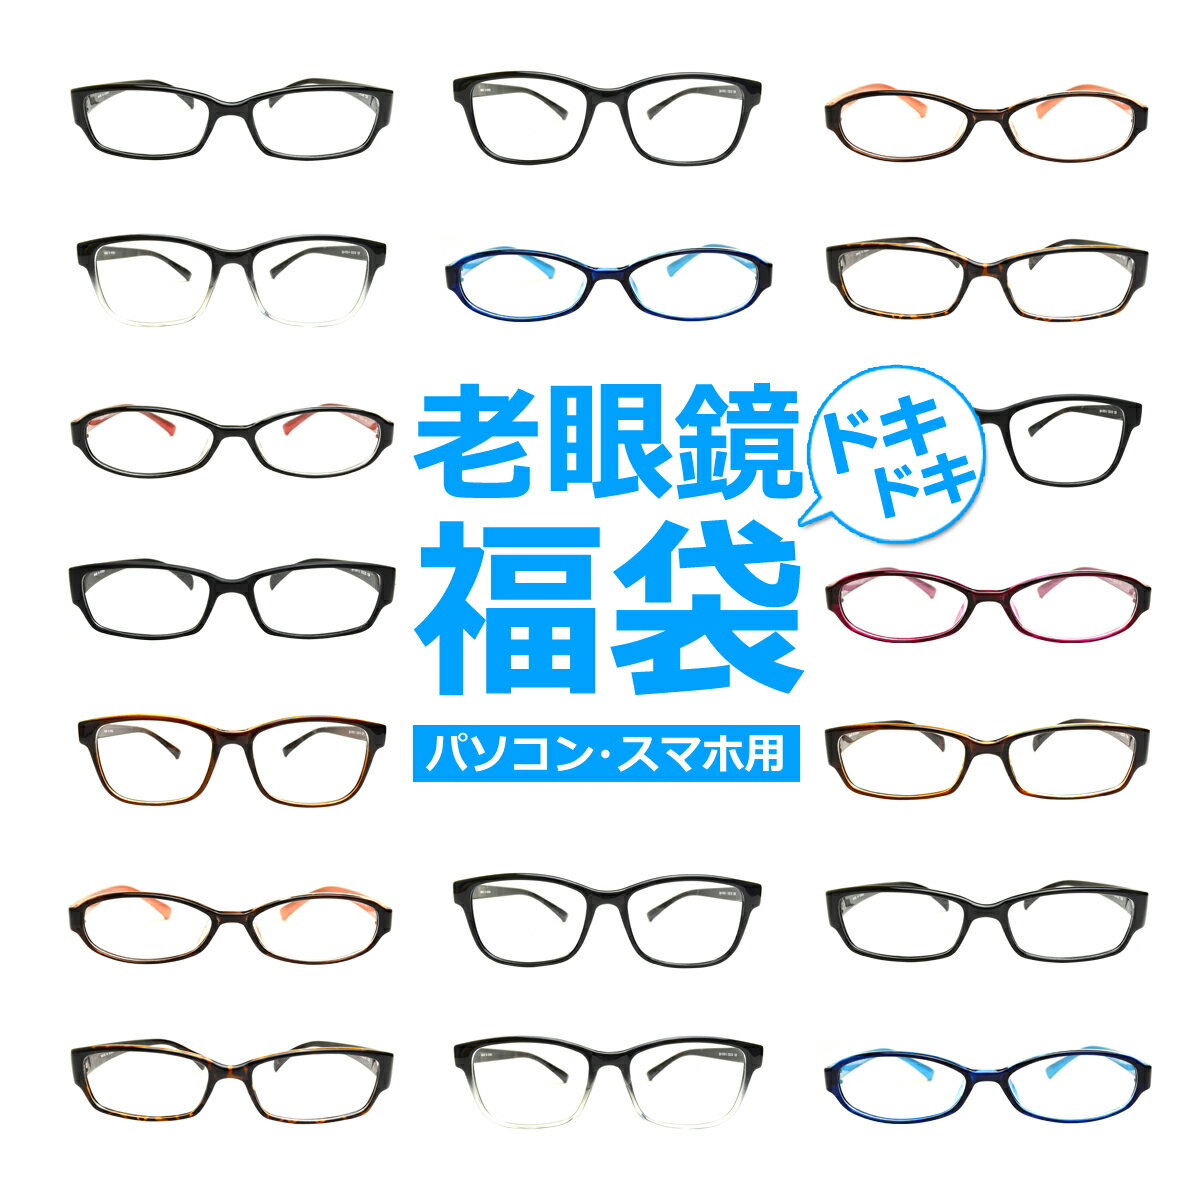 パソコン・スマホ用老眼鏡福袋 ブルーライトカット率約33% メガネ 遠視 リーディンググラス